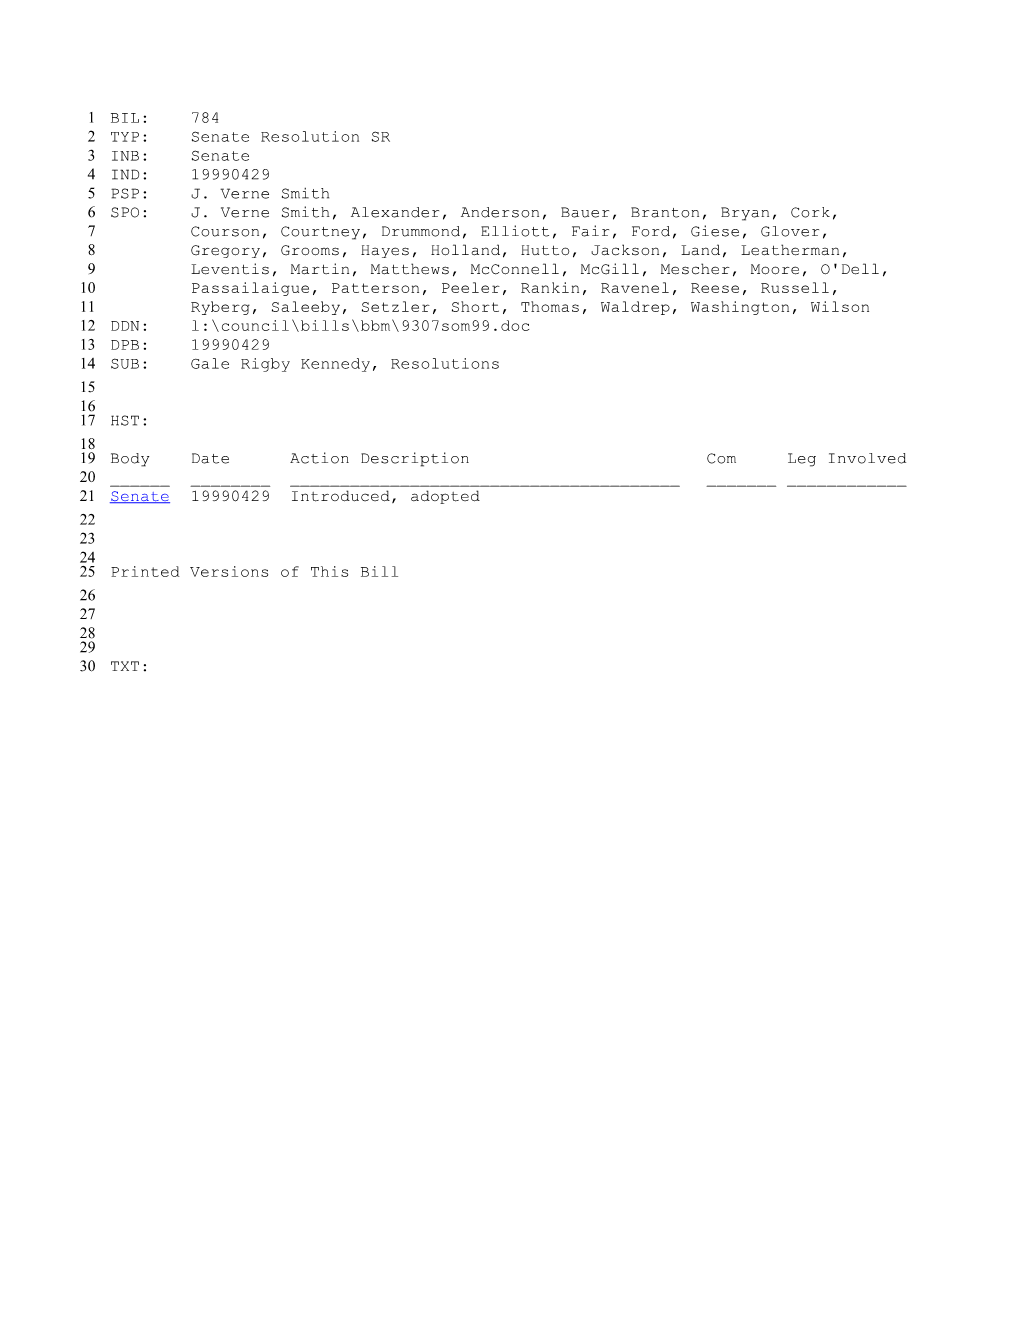 1999-2000 Bill 784: Gale Rigby Kennedy, Resolutions - South Carolina Legislature Online